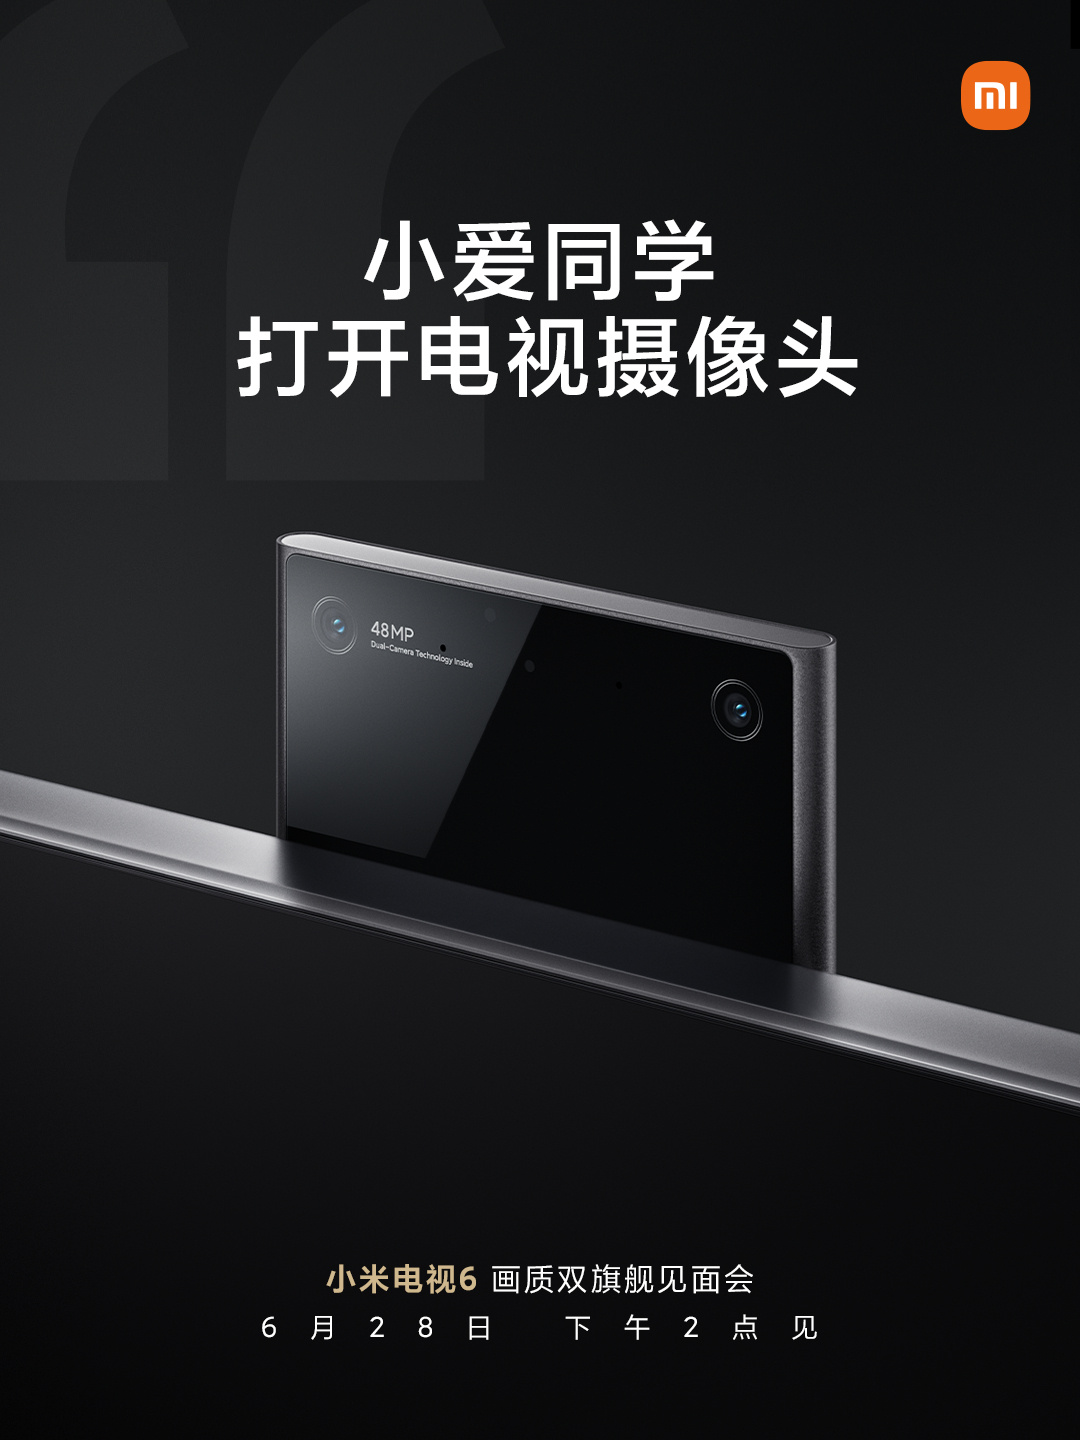 Xiaomi Mi TV 6 dual cameras